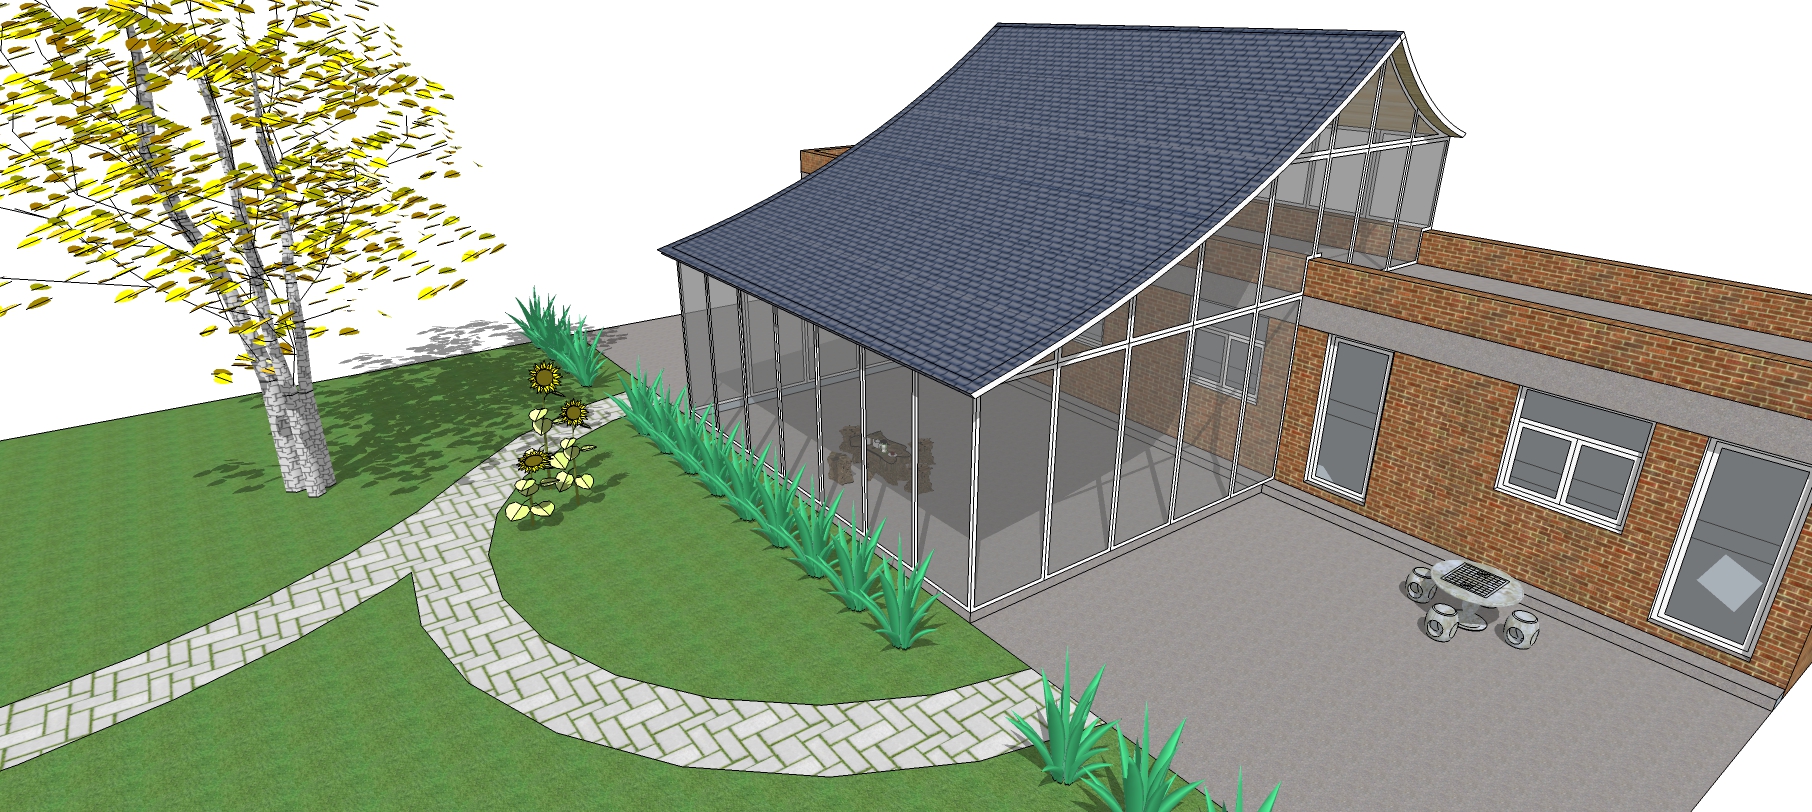 房子搭建树脂瓦屋顶如何设计造型？树脂瓦房顶效果图给大家看看 - 哔哩哔哩